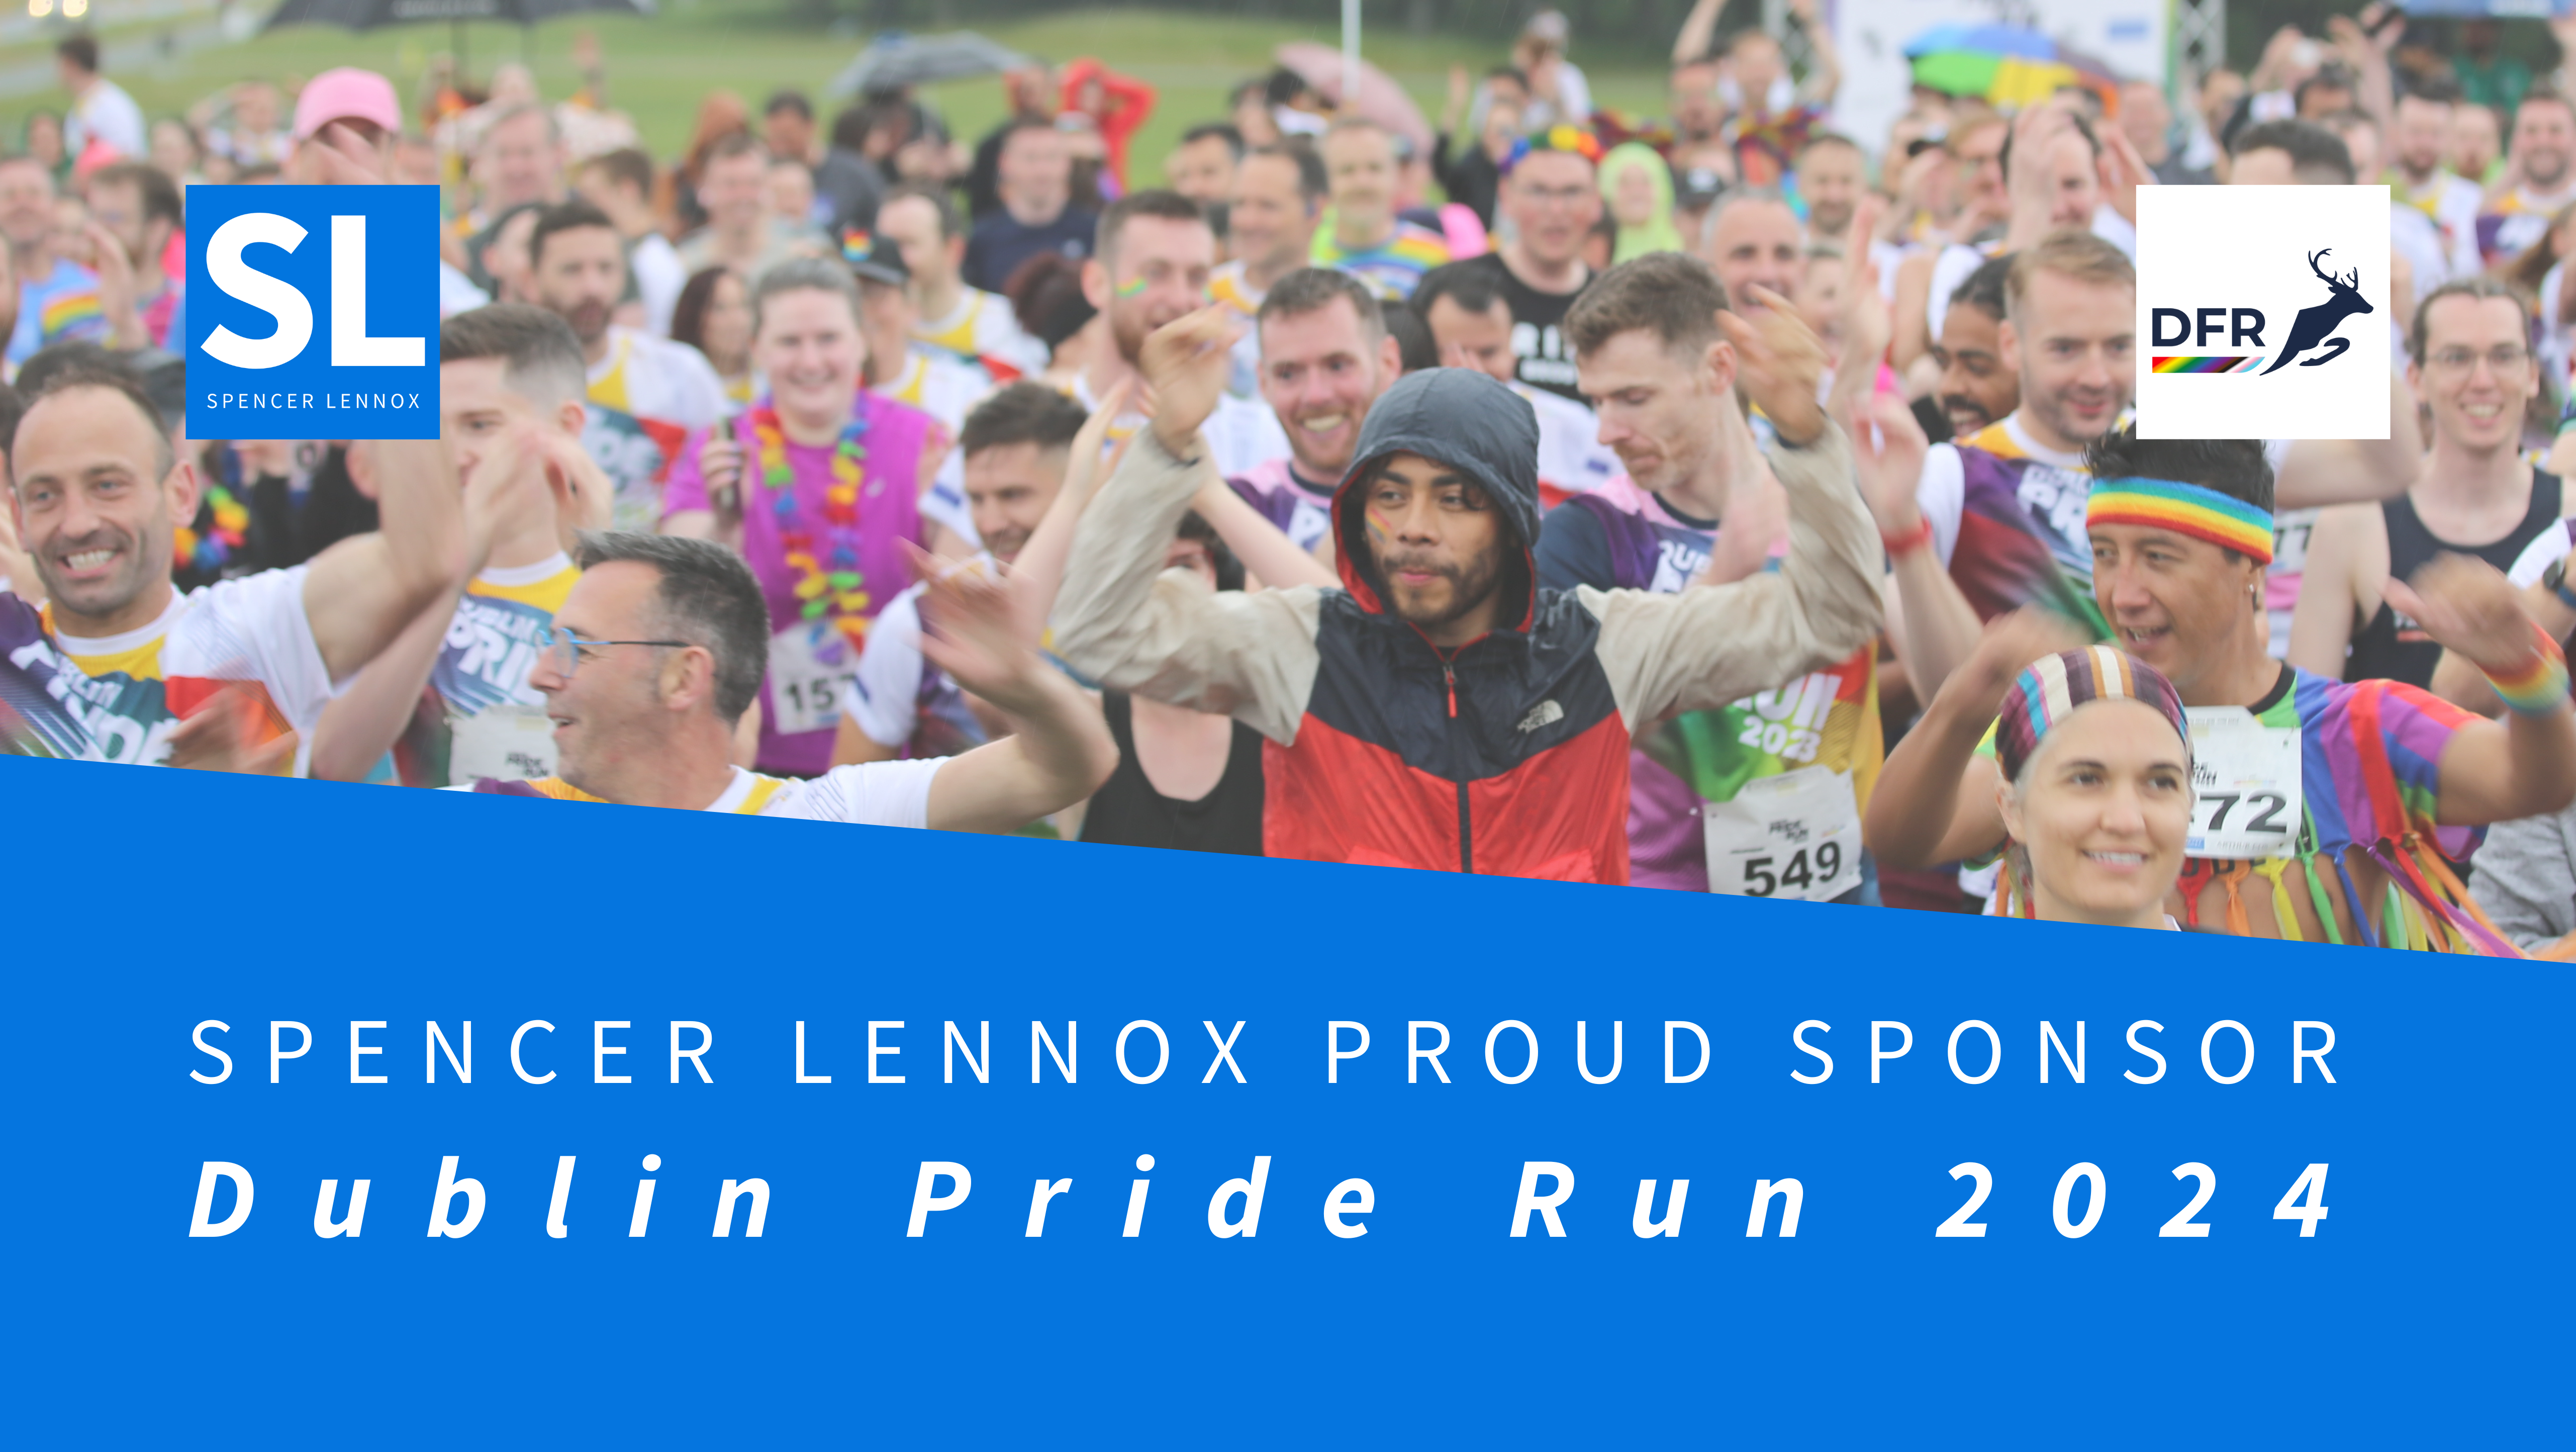 Spencer Lennox is proud sponsor of the Dublin Pride Run 2024